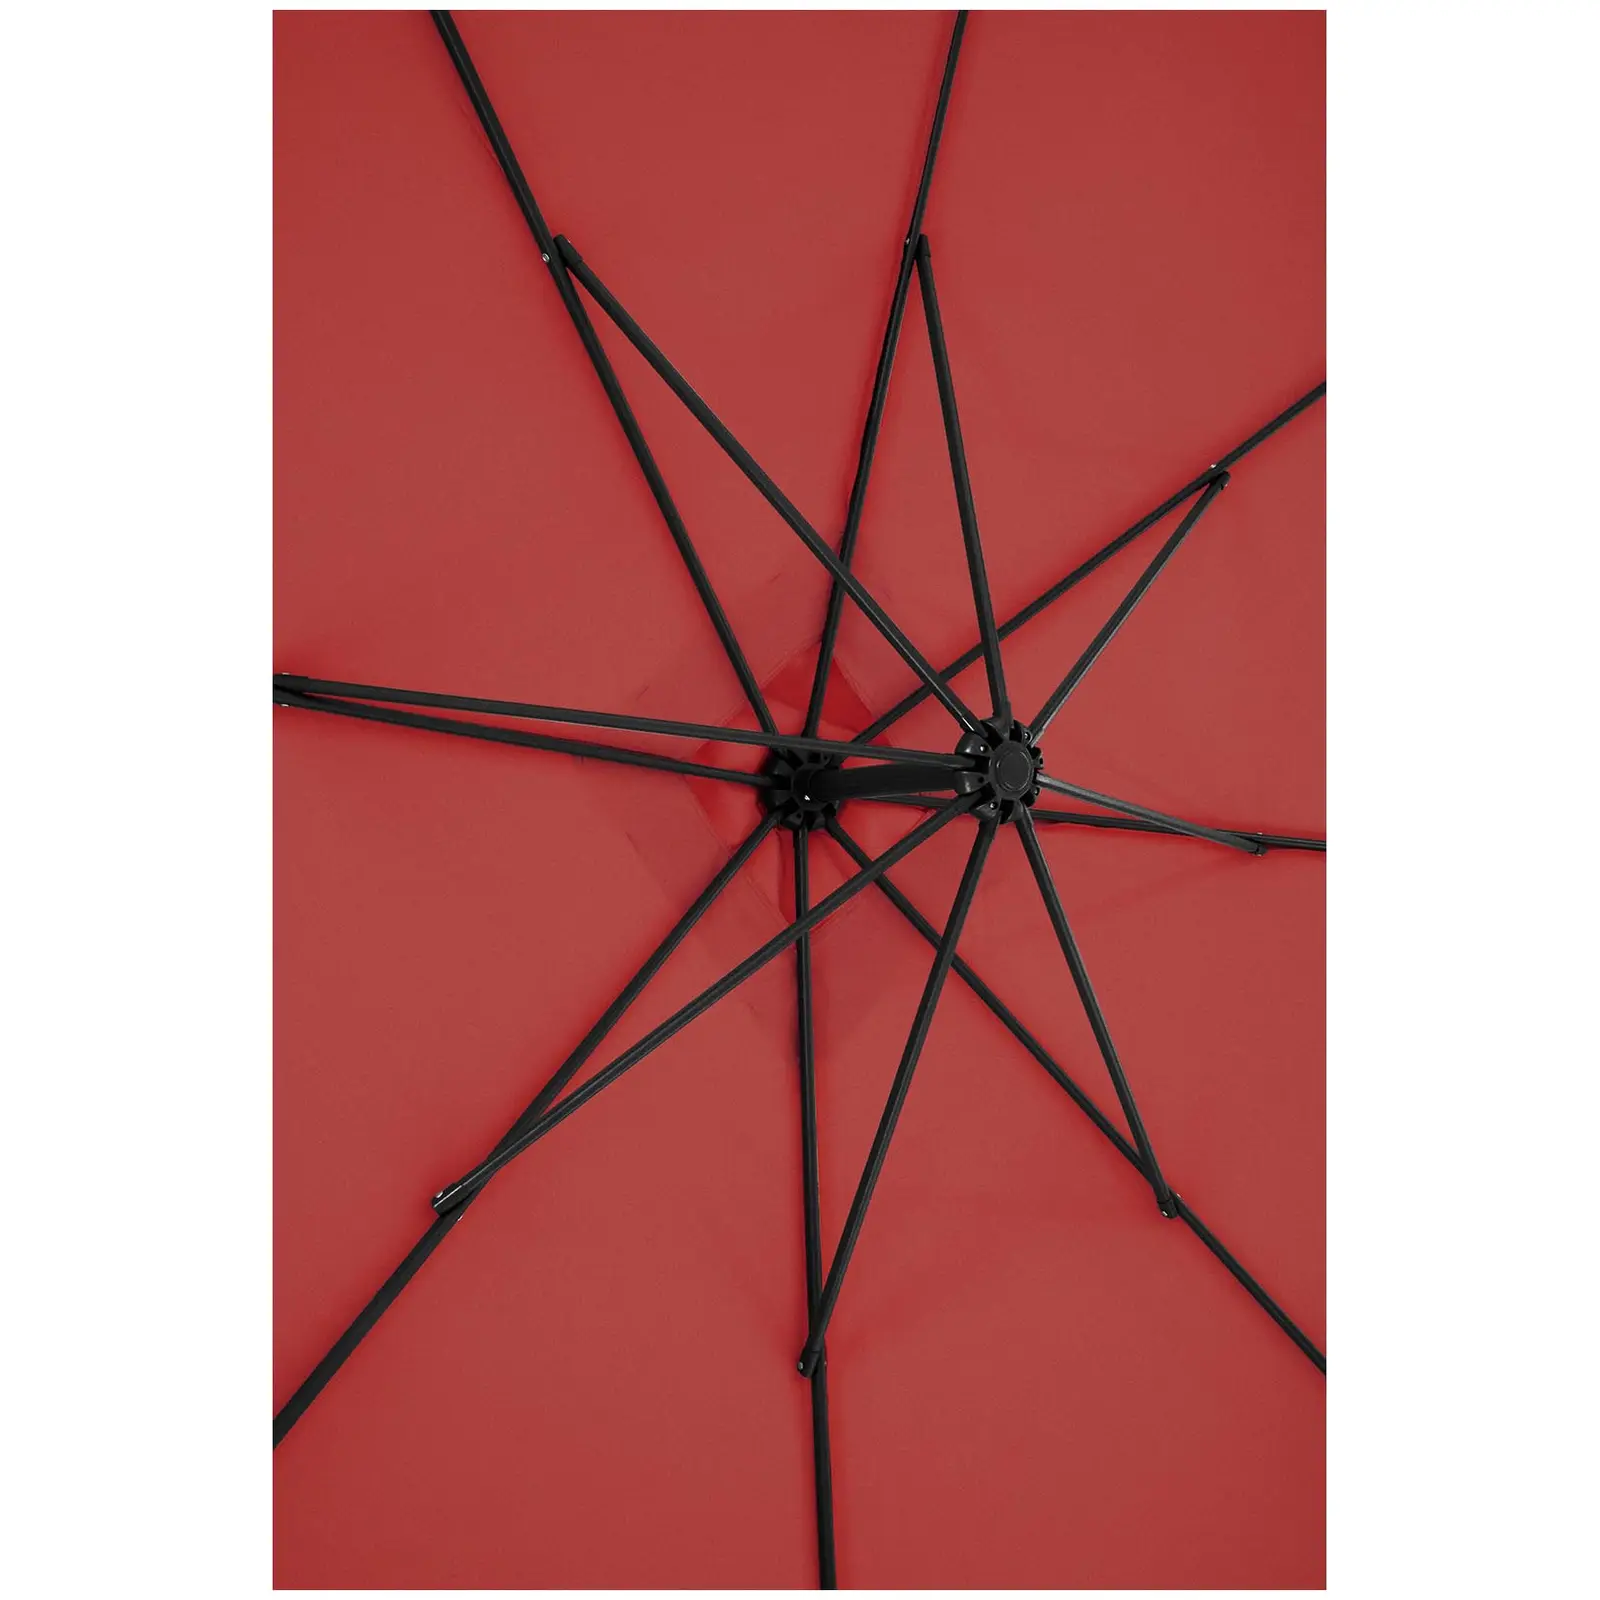 Parasol de jardin - Bordeaux - carré - 250 x 250 cm - inclinable